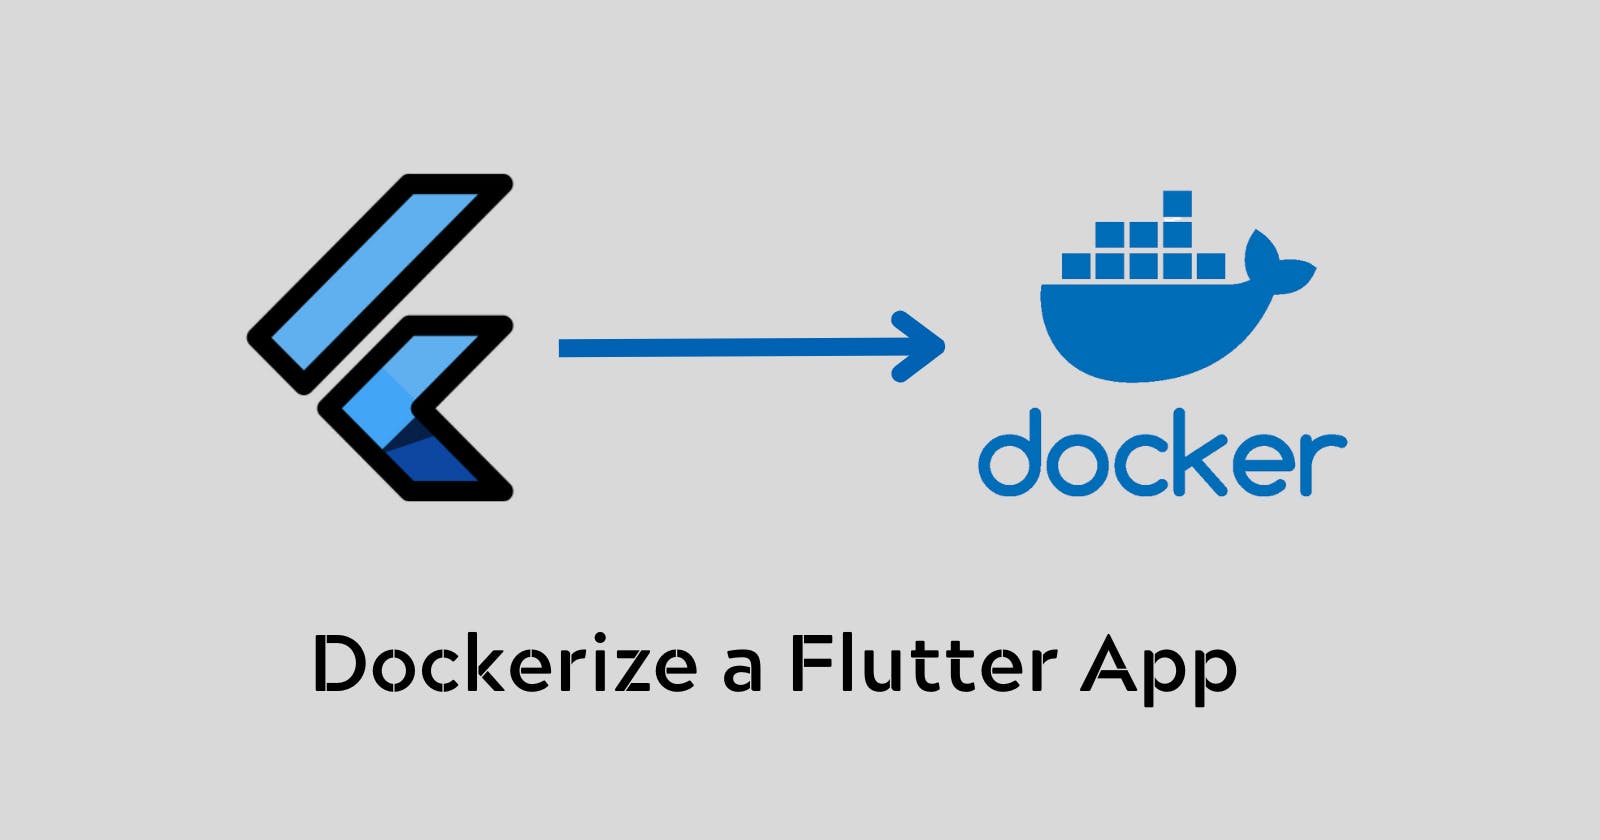 Convert a flutter web app to a docker container